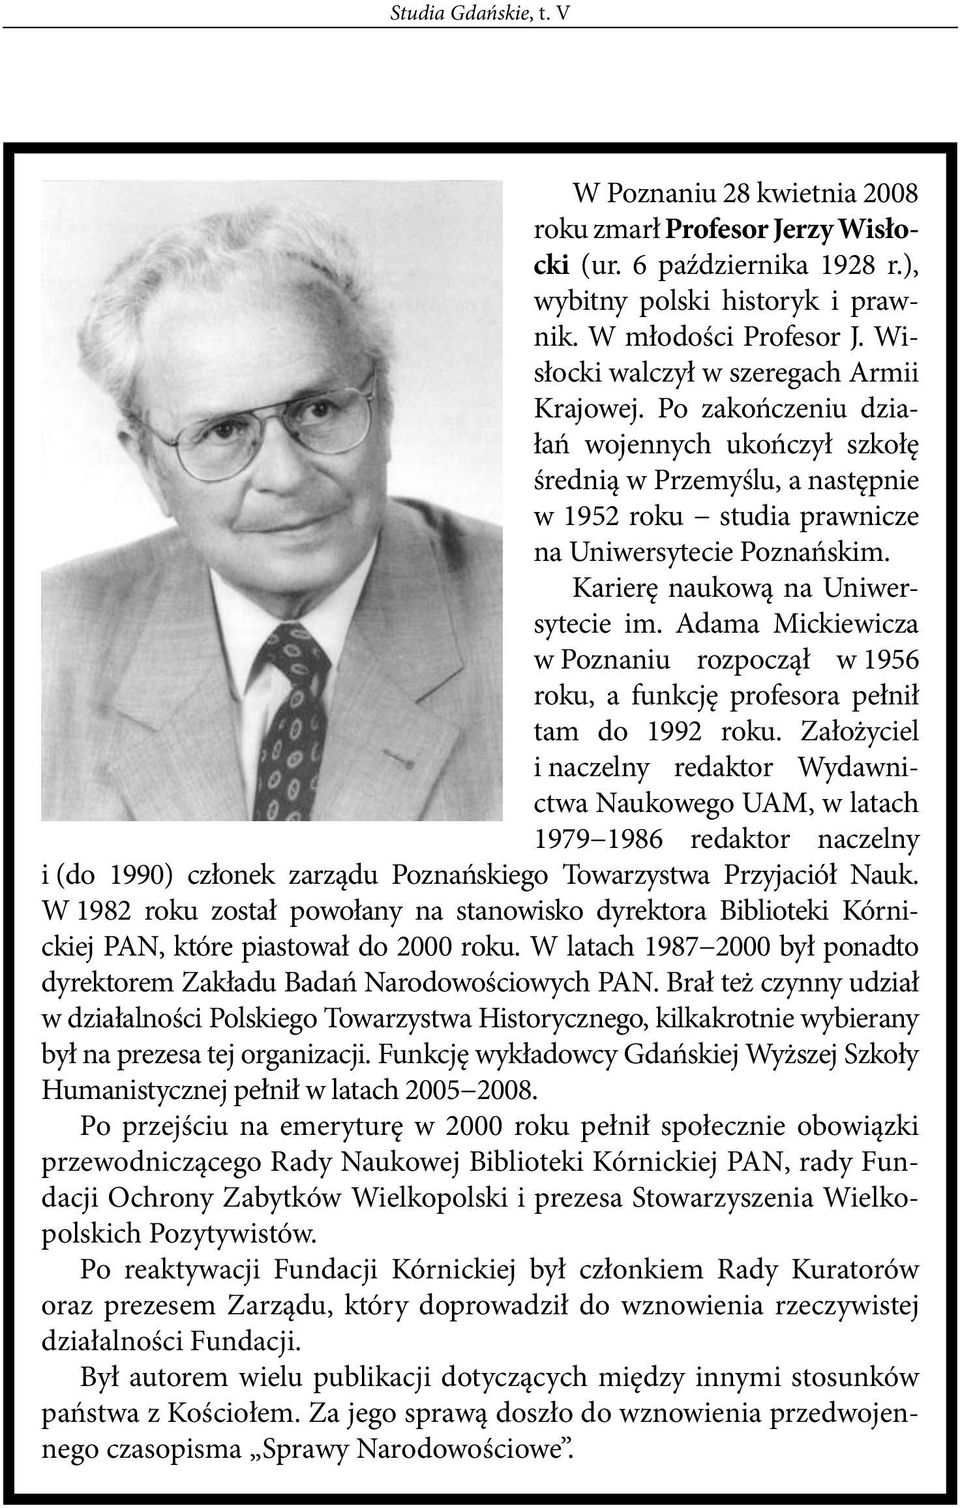 Karierę naukową na Uniwersytecie im. Adama Mickiewicza w Poznaniu rozpoczął w 1956 roku, a funkcję profesora pełnił tam do 1992 roku.